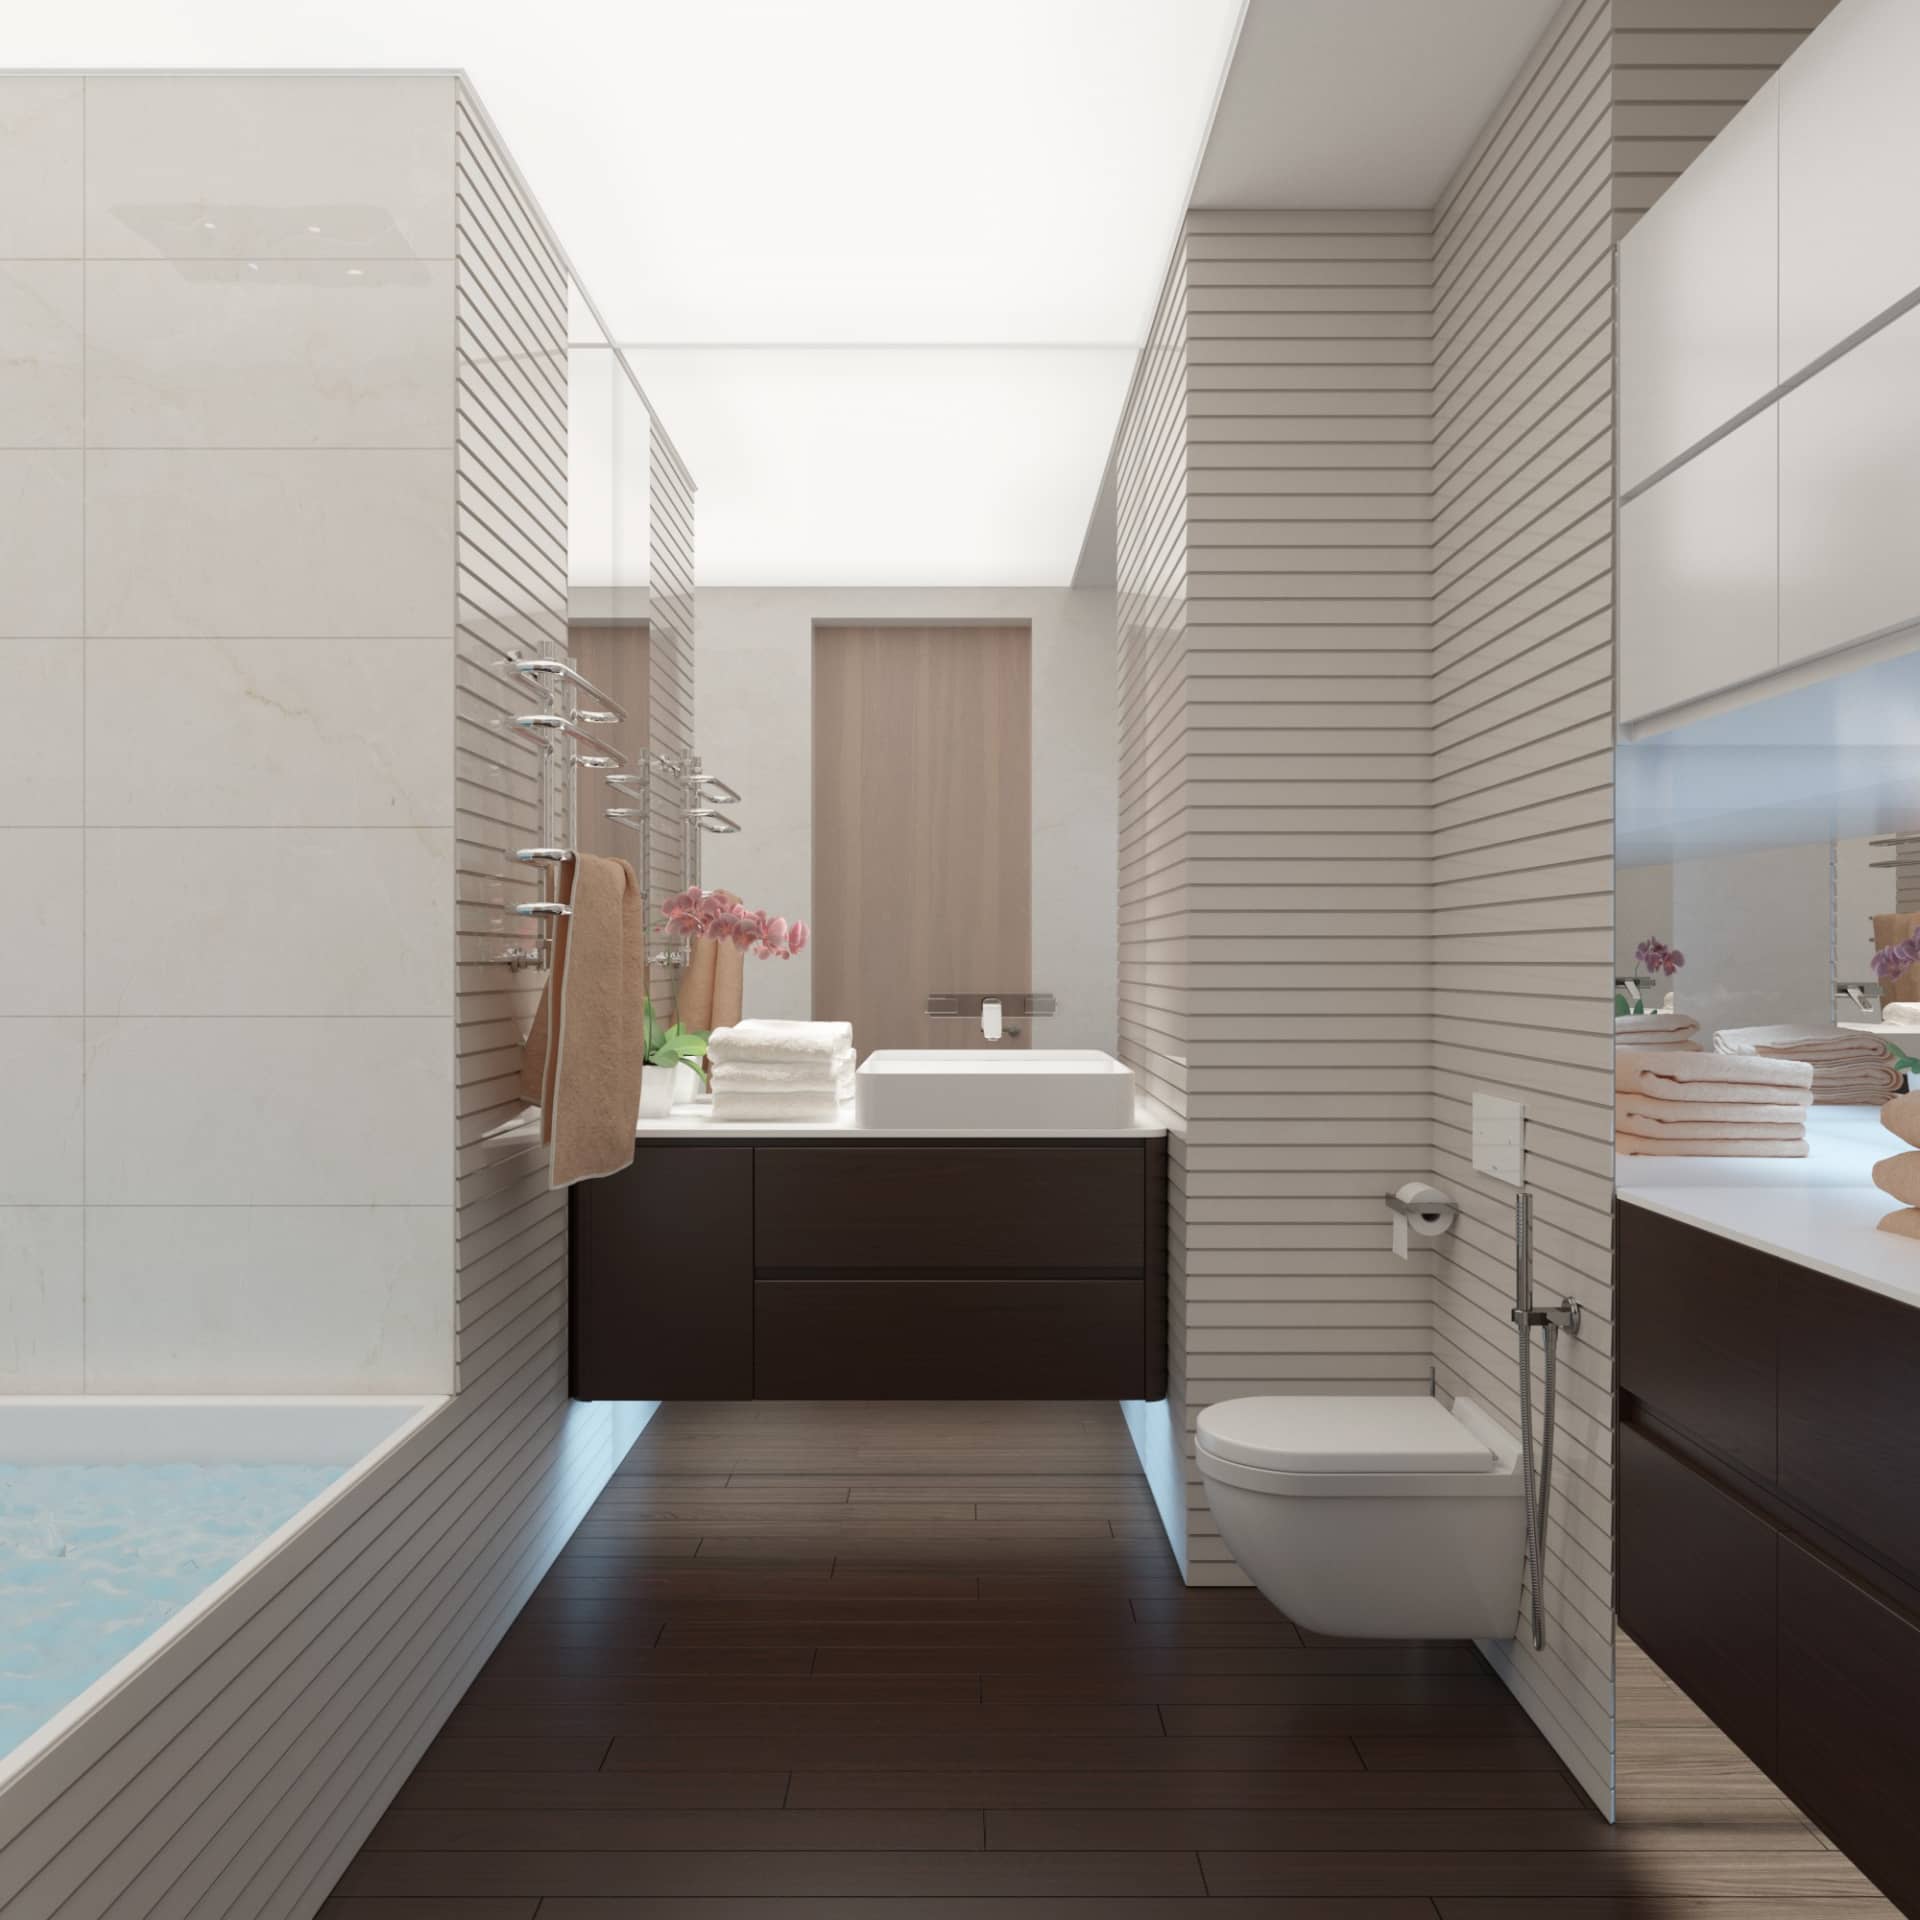 Ванная комната выполнена в белых и кремовых оттенках